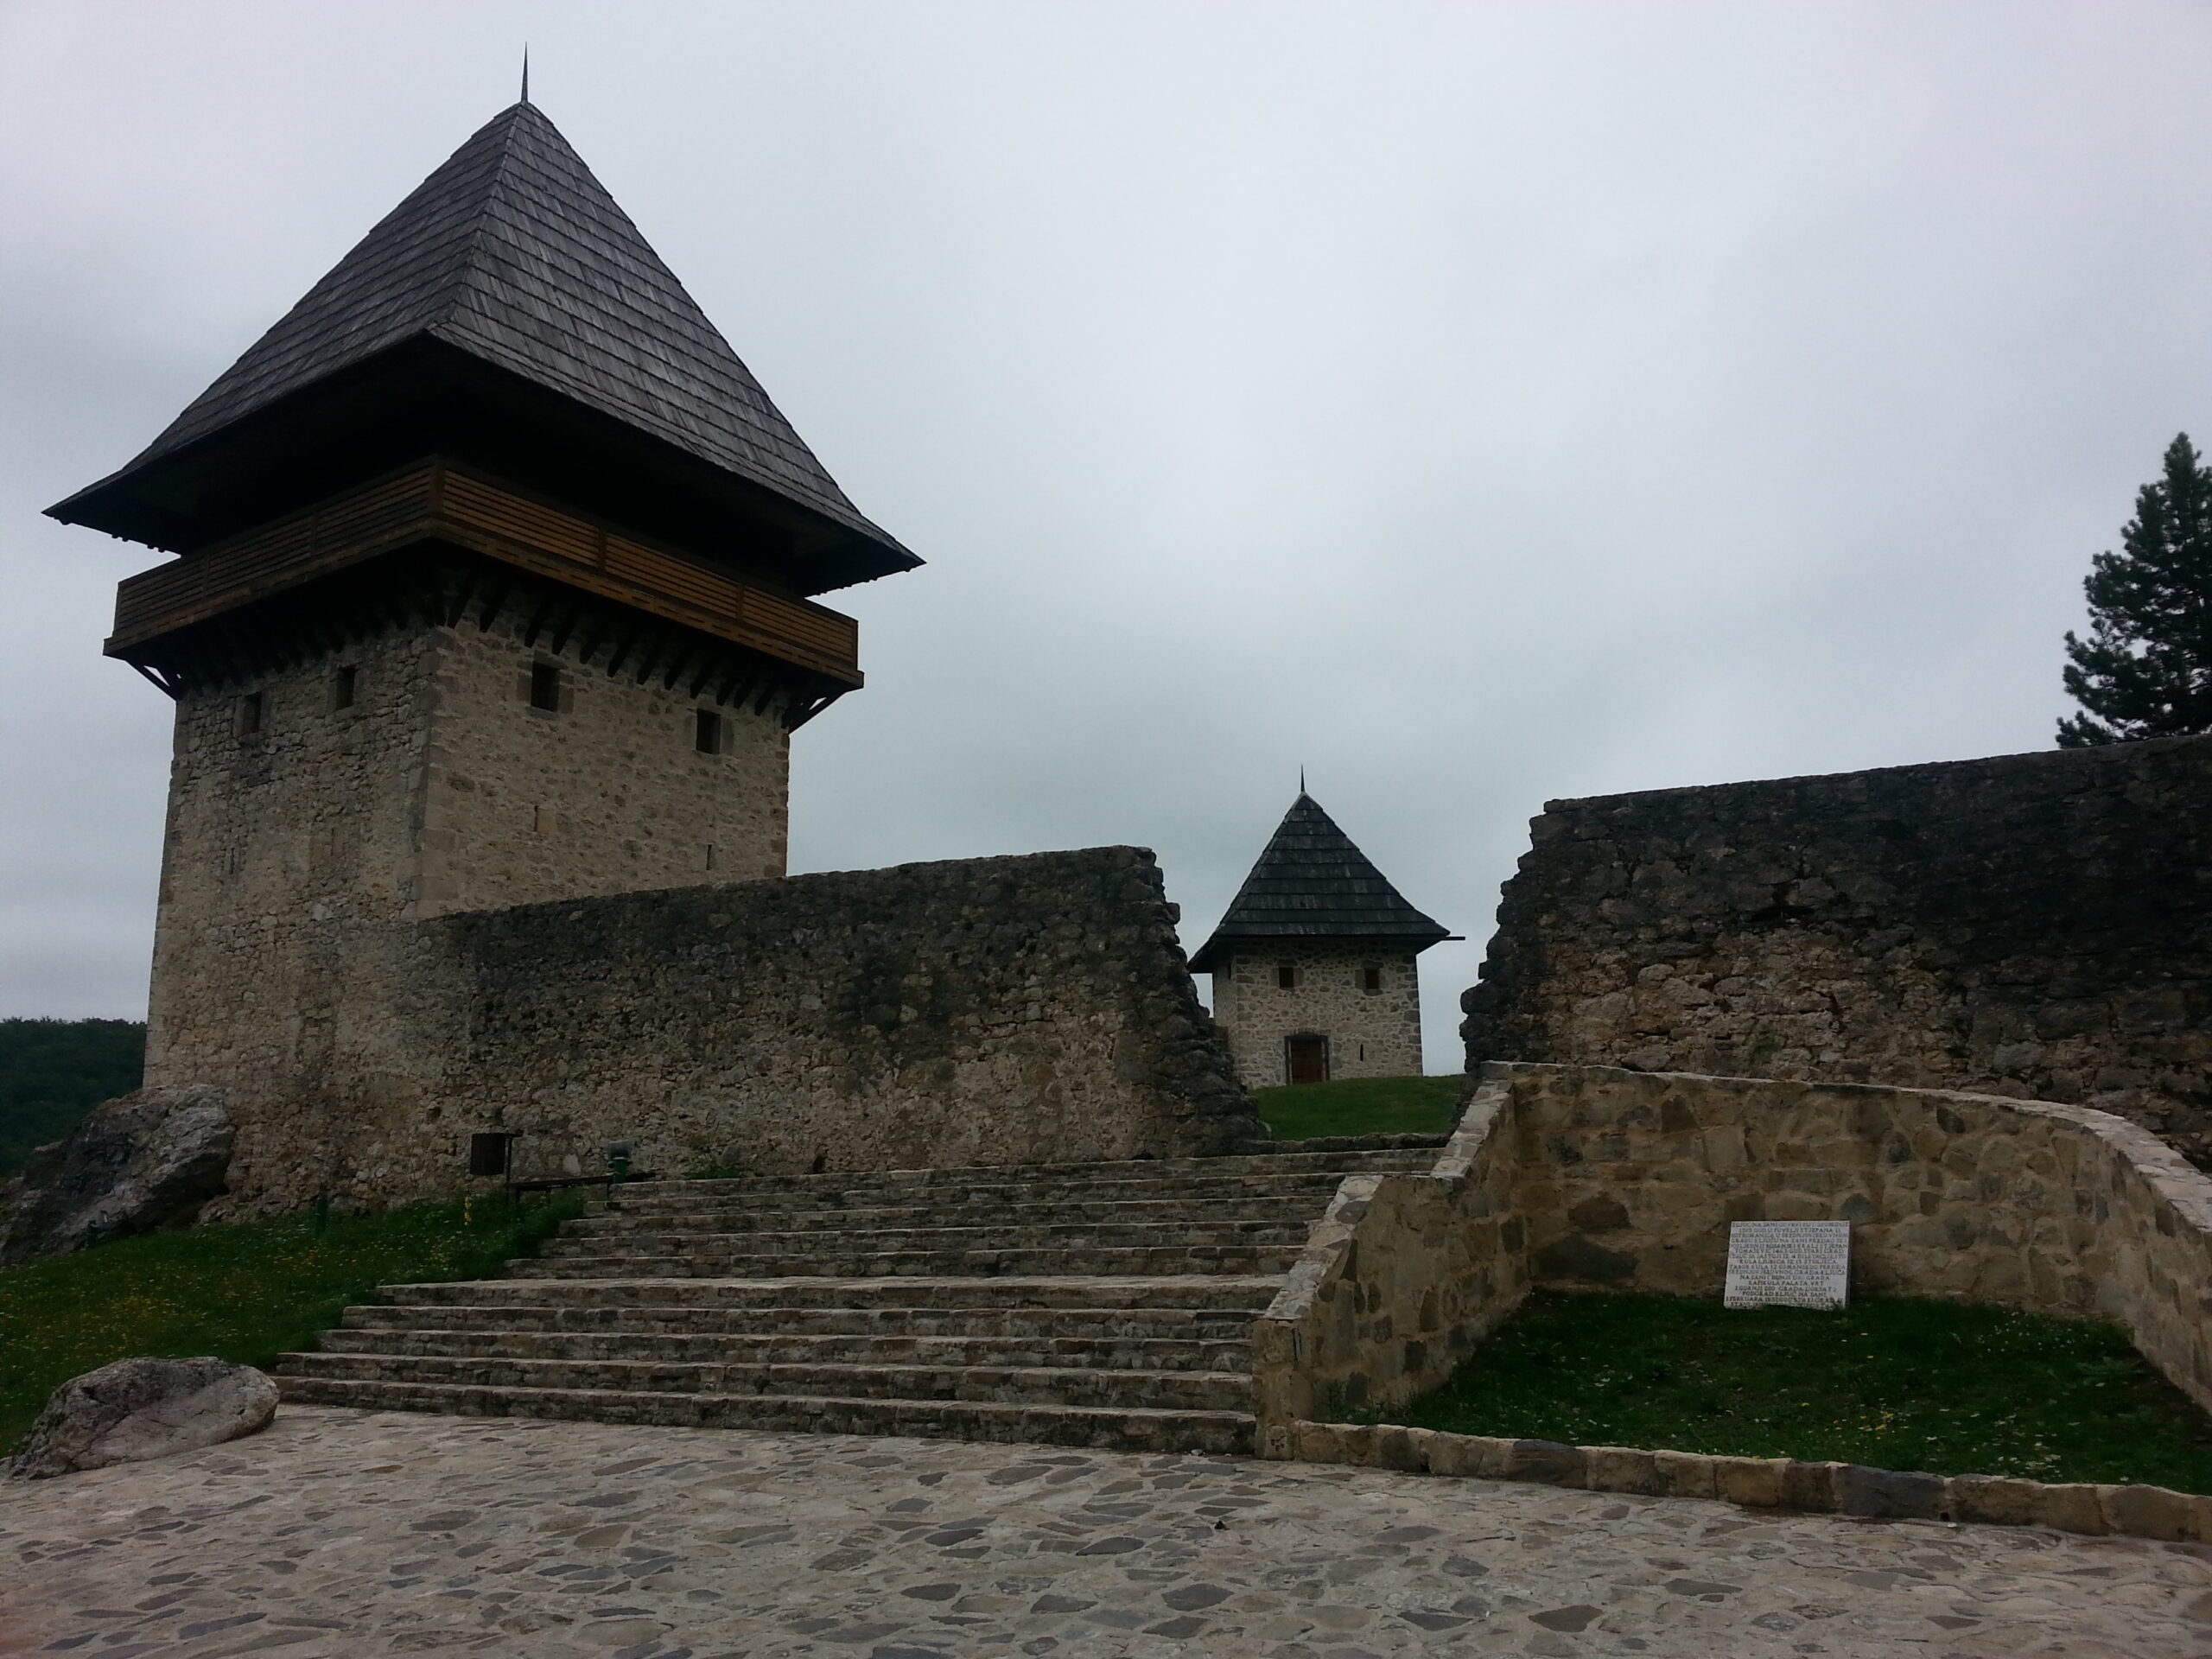  Ključ – mjesto gdje je završena era bosanskog kraljevstva